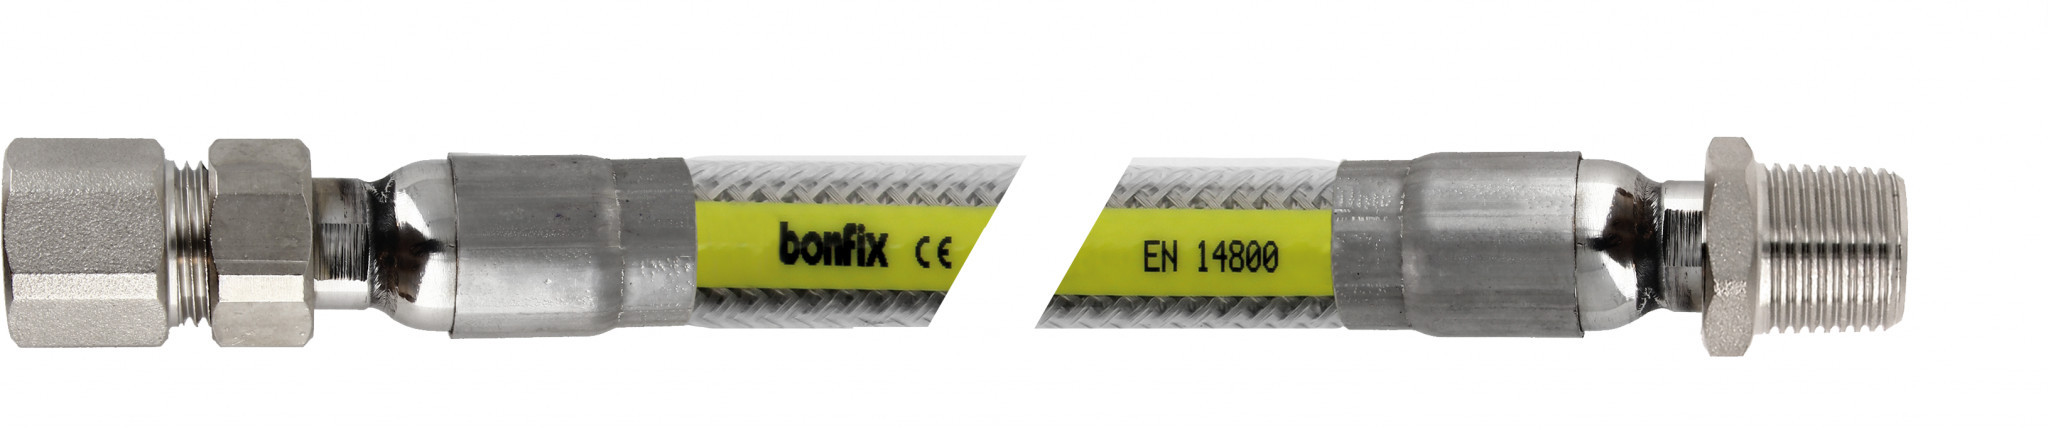 Bonfix Inox gasflexibels voor België Superieure RVS gasslang 200 cm - 1/2 binnendraad x 1/2 buitendraad